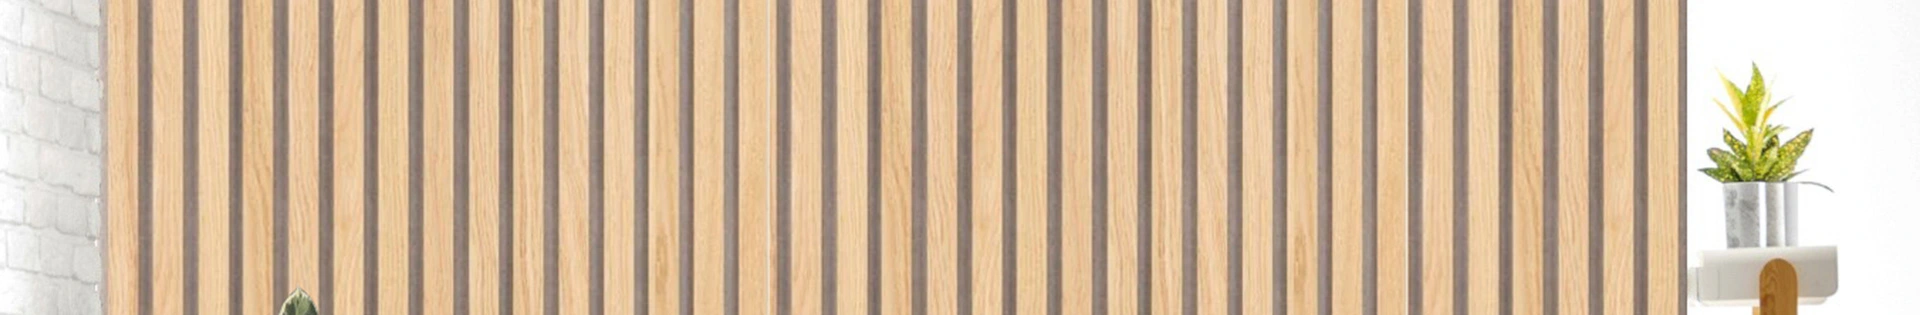 Acoustic Slat Wood Wall Panel